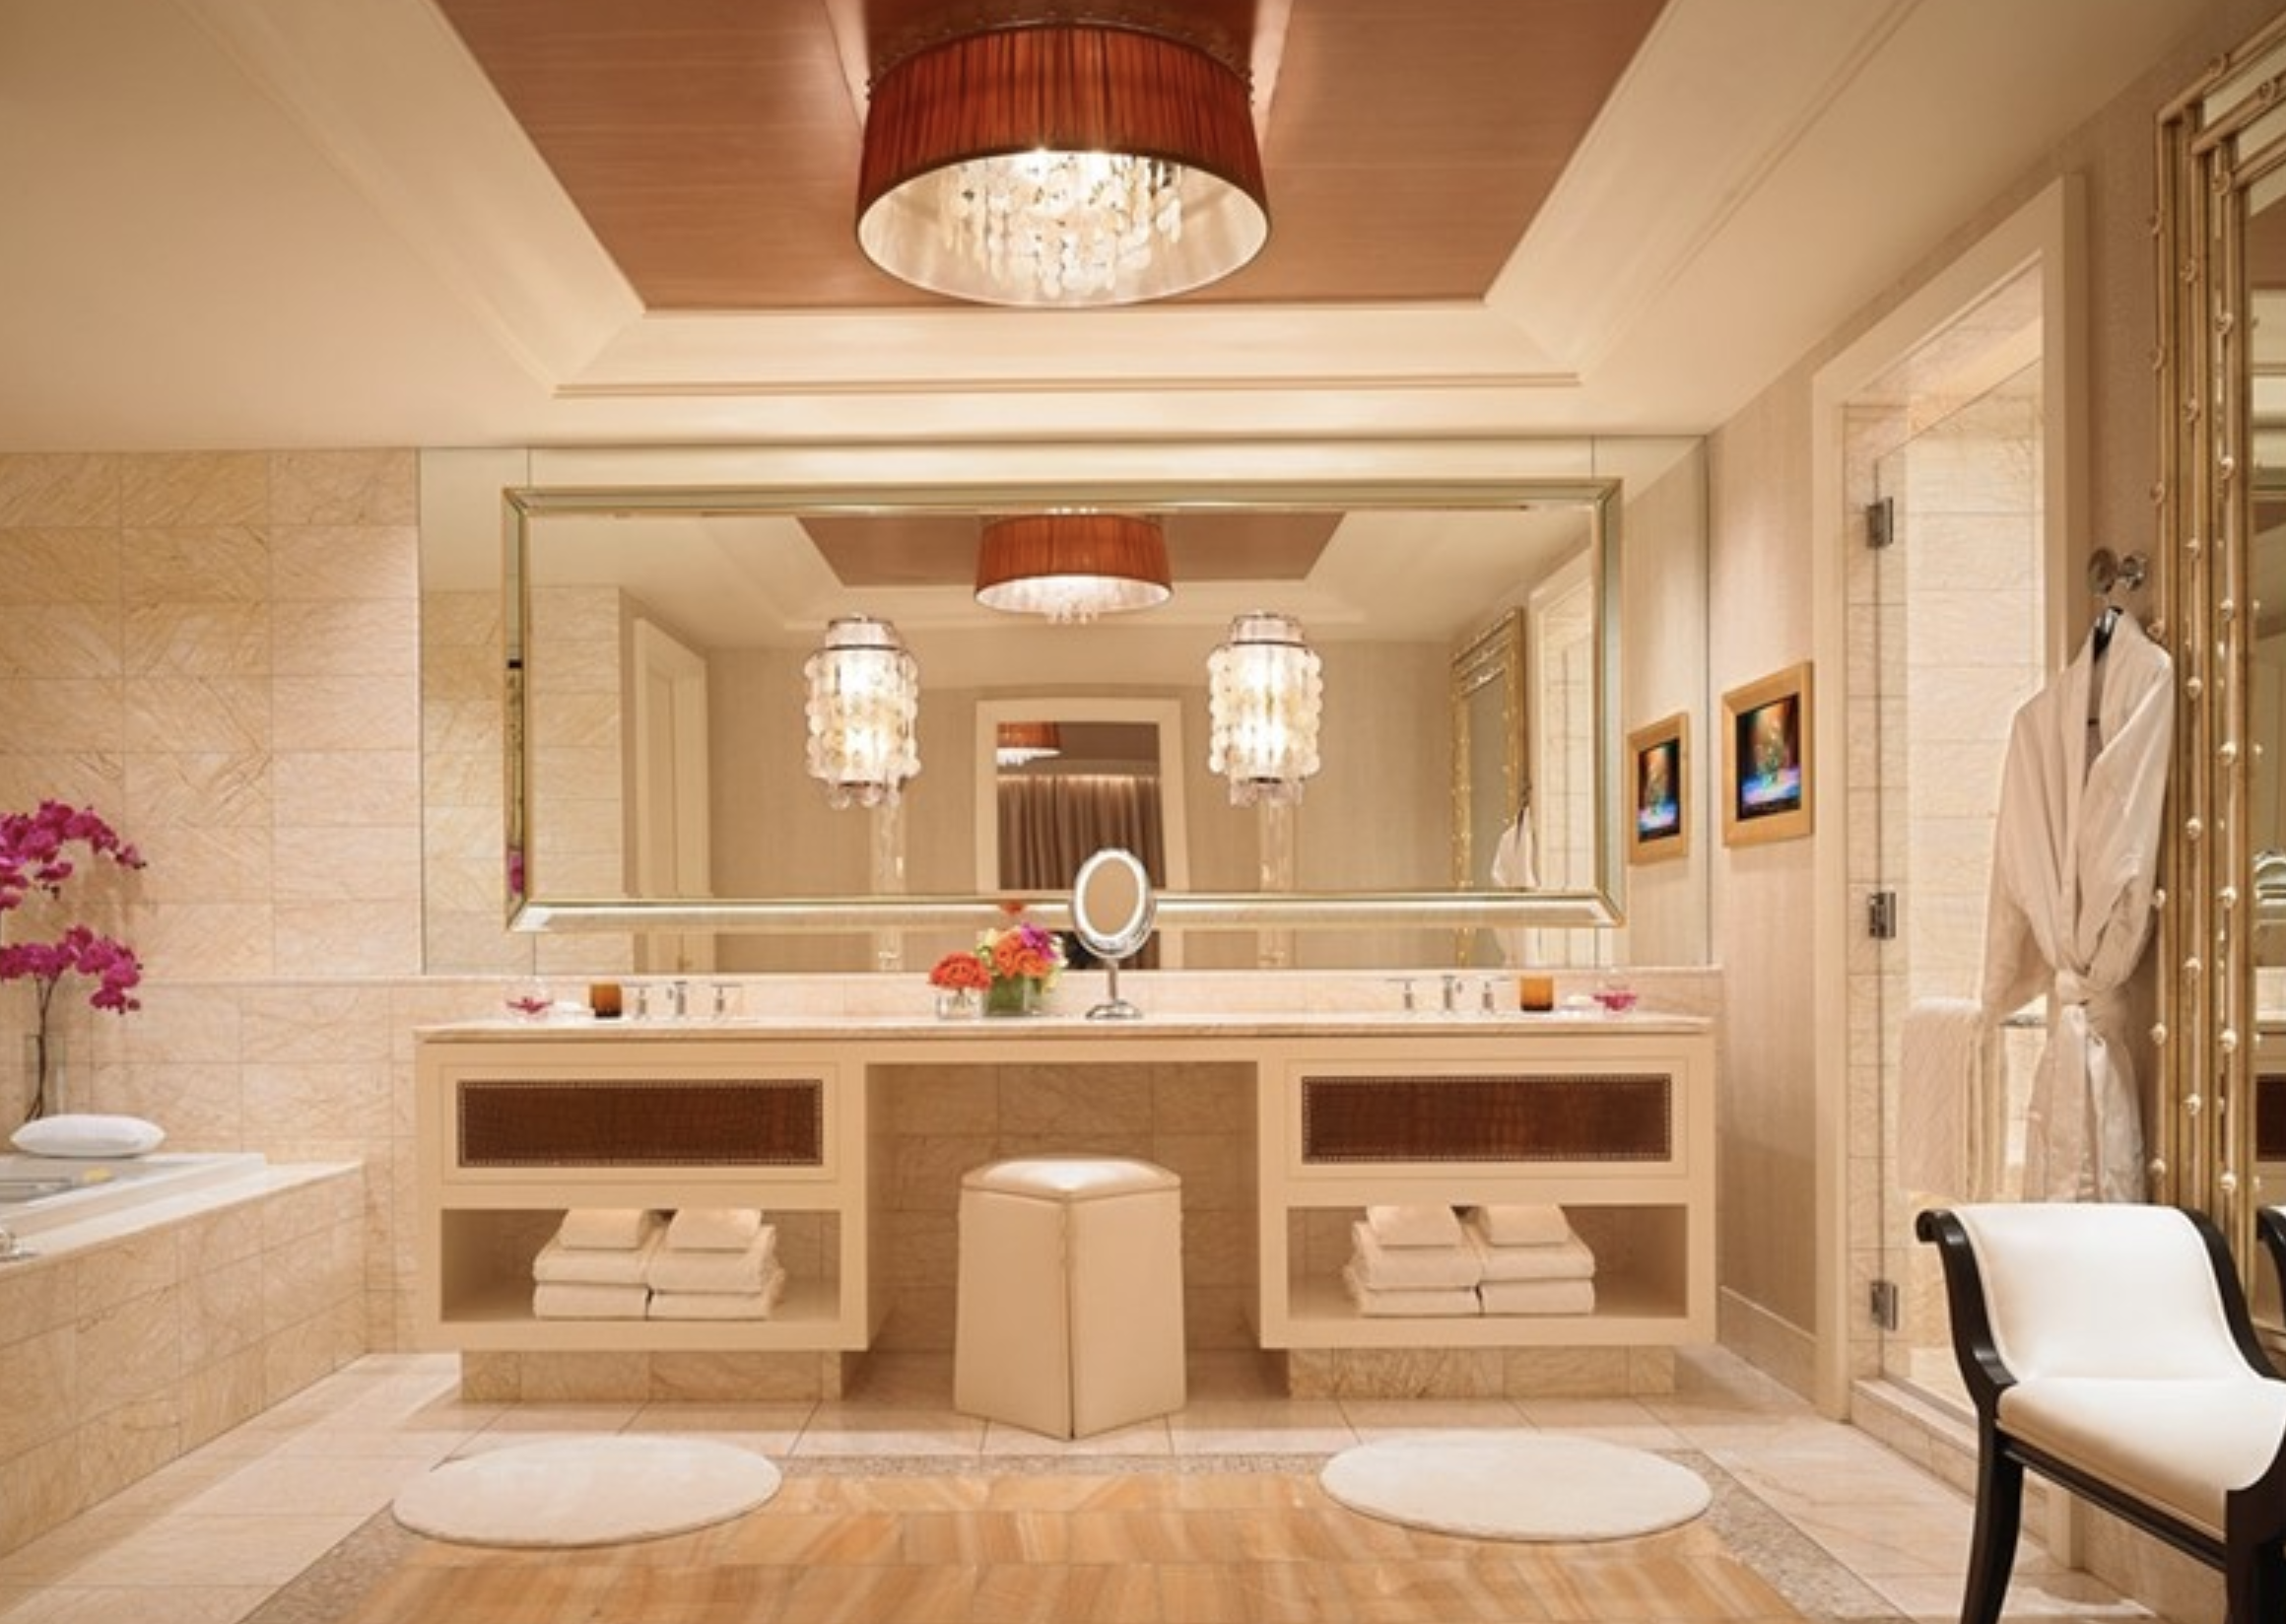 Dior Bathroom Set - Home Decor - Kimm's Boutique